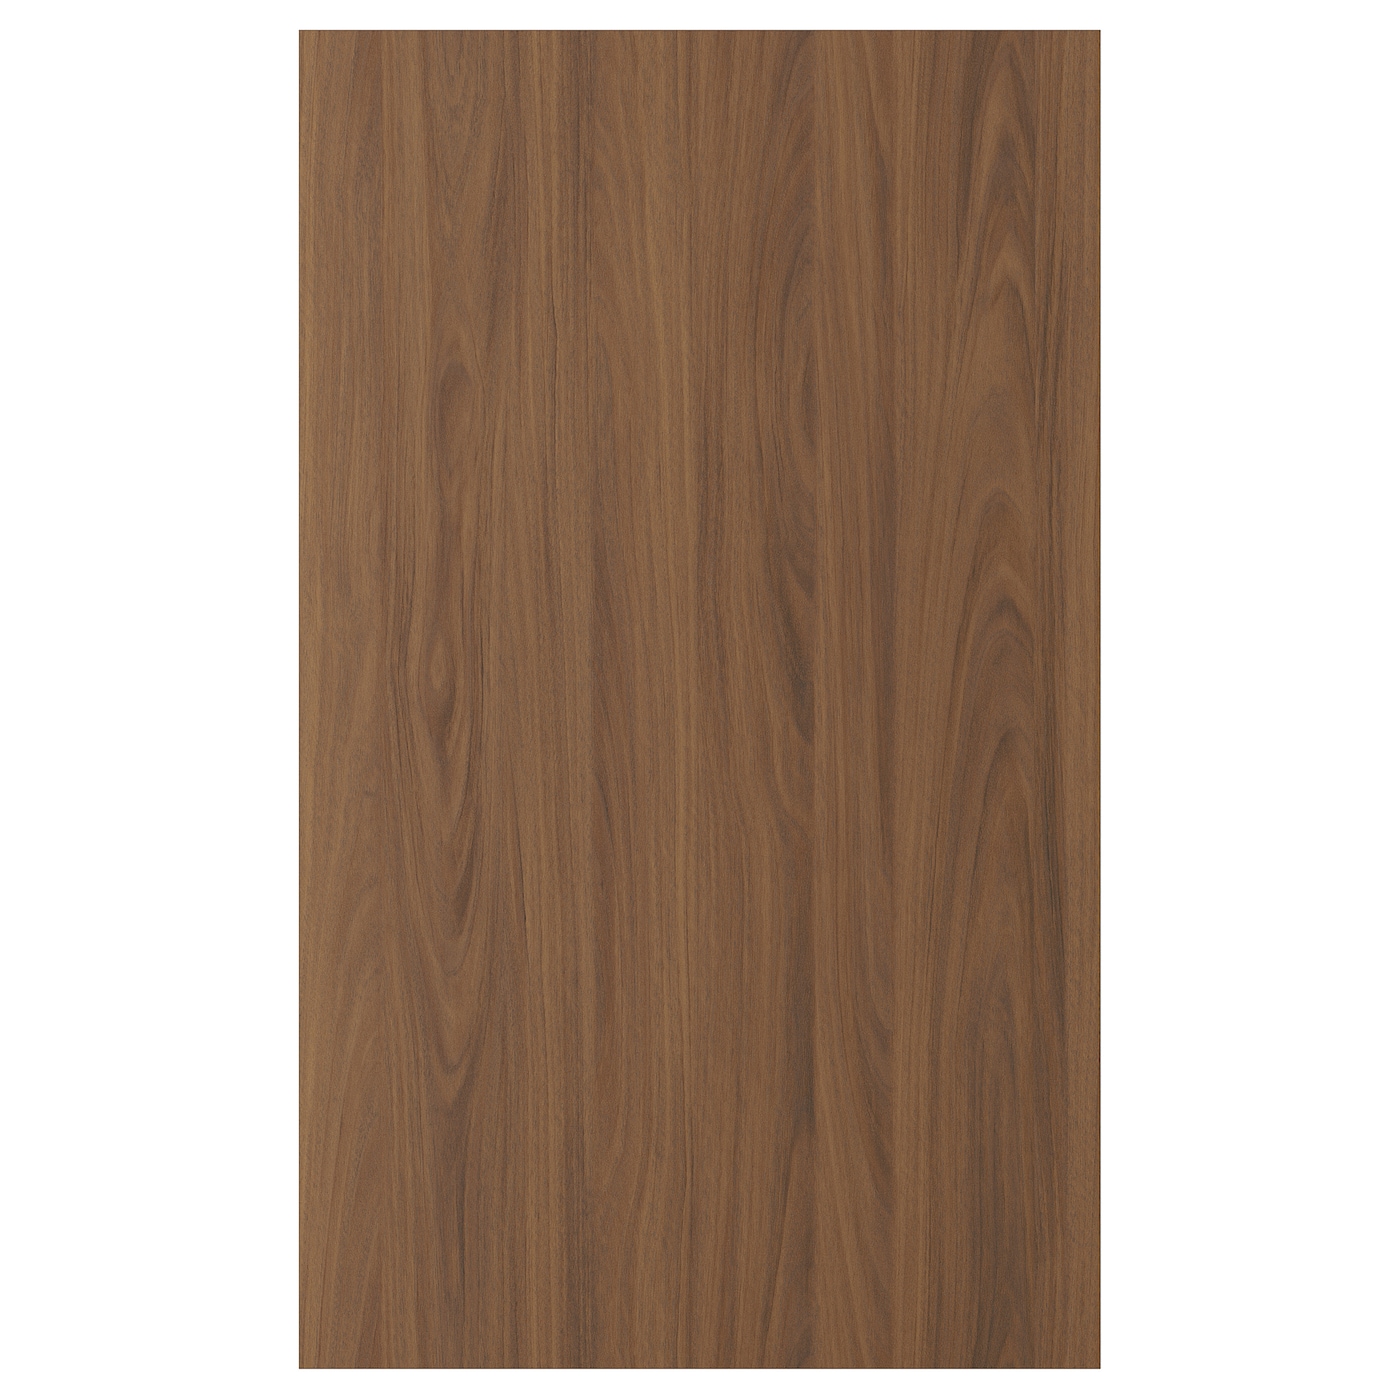 Дверца  - TISTORP IKEA/ ТИСТОРП ИКЕА,  100х60 см, коричневый